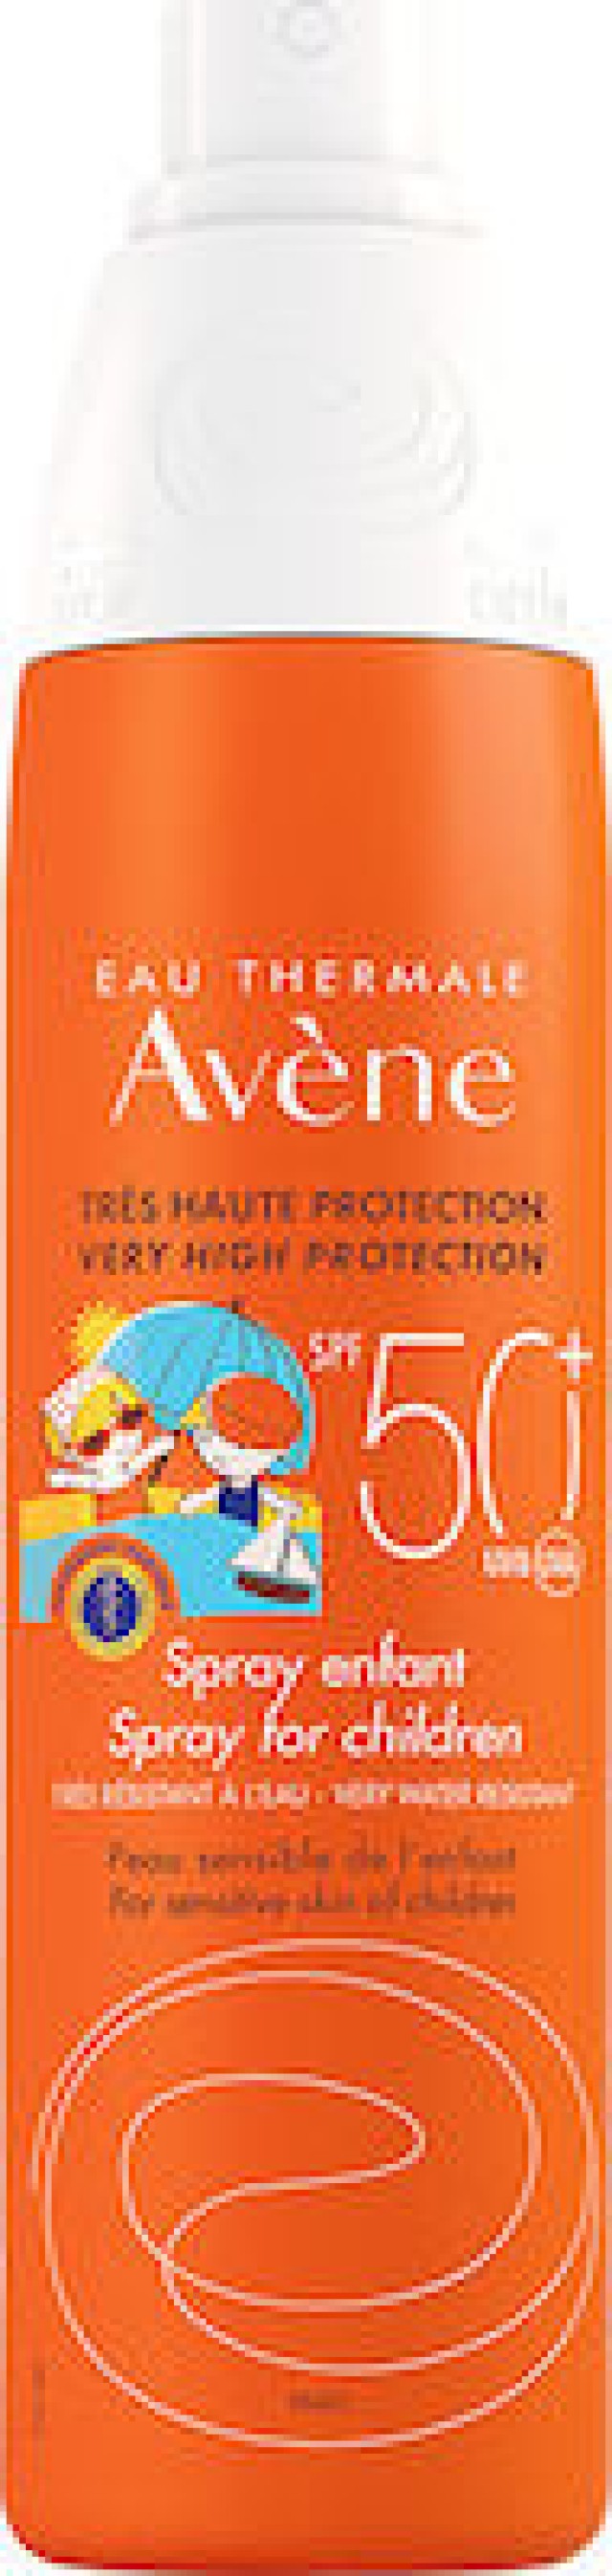 AVENE Solaire Enfant Spray  Open & Stop SPF50+, Παιδικό Αντιηλιακό Σπρέι Χωρίς Άρωμα, 200ml